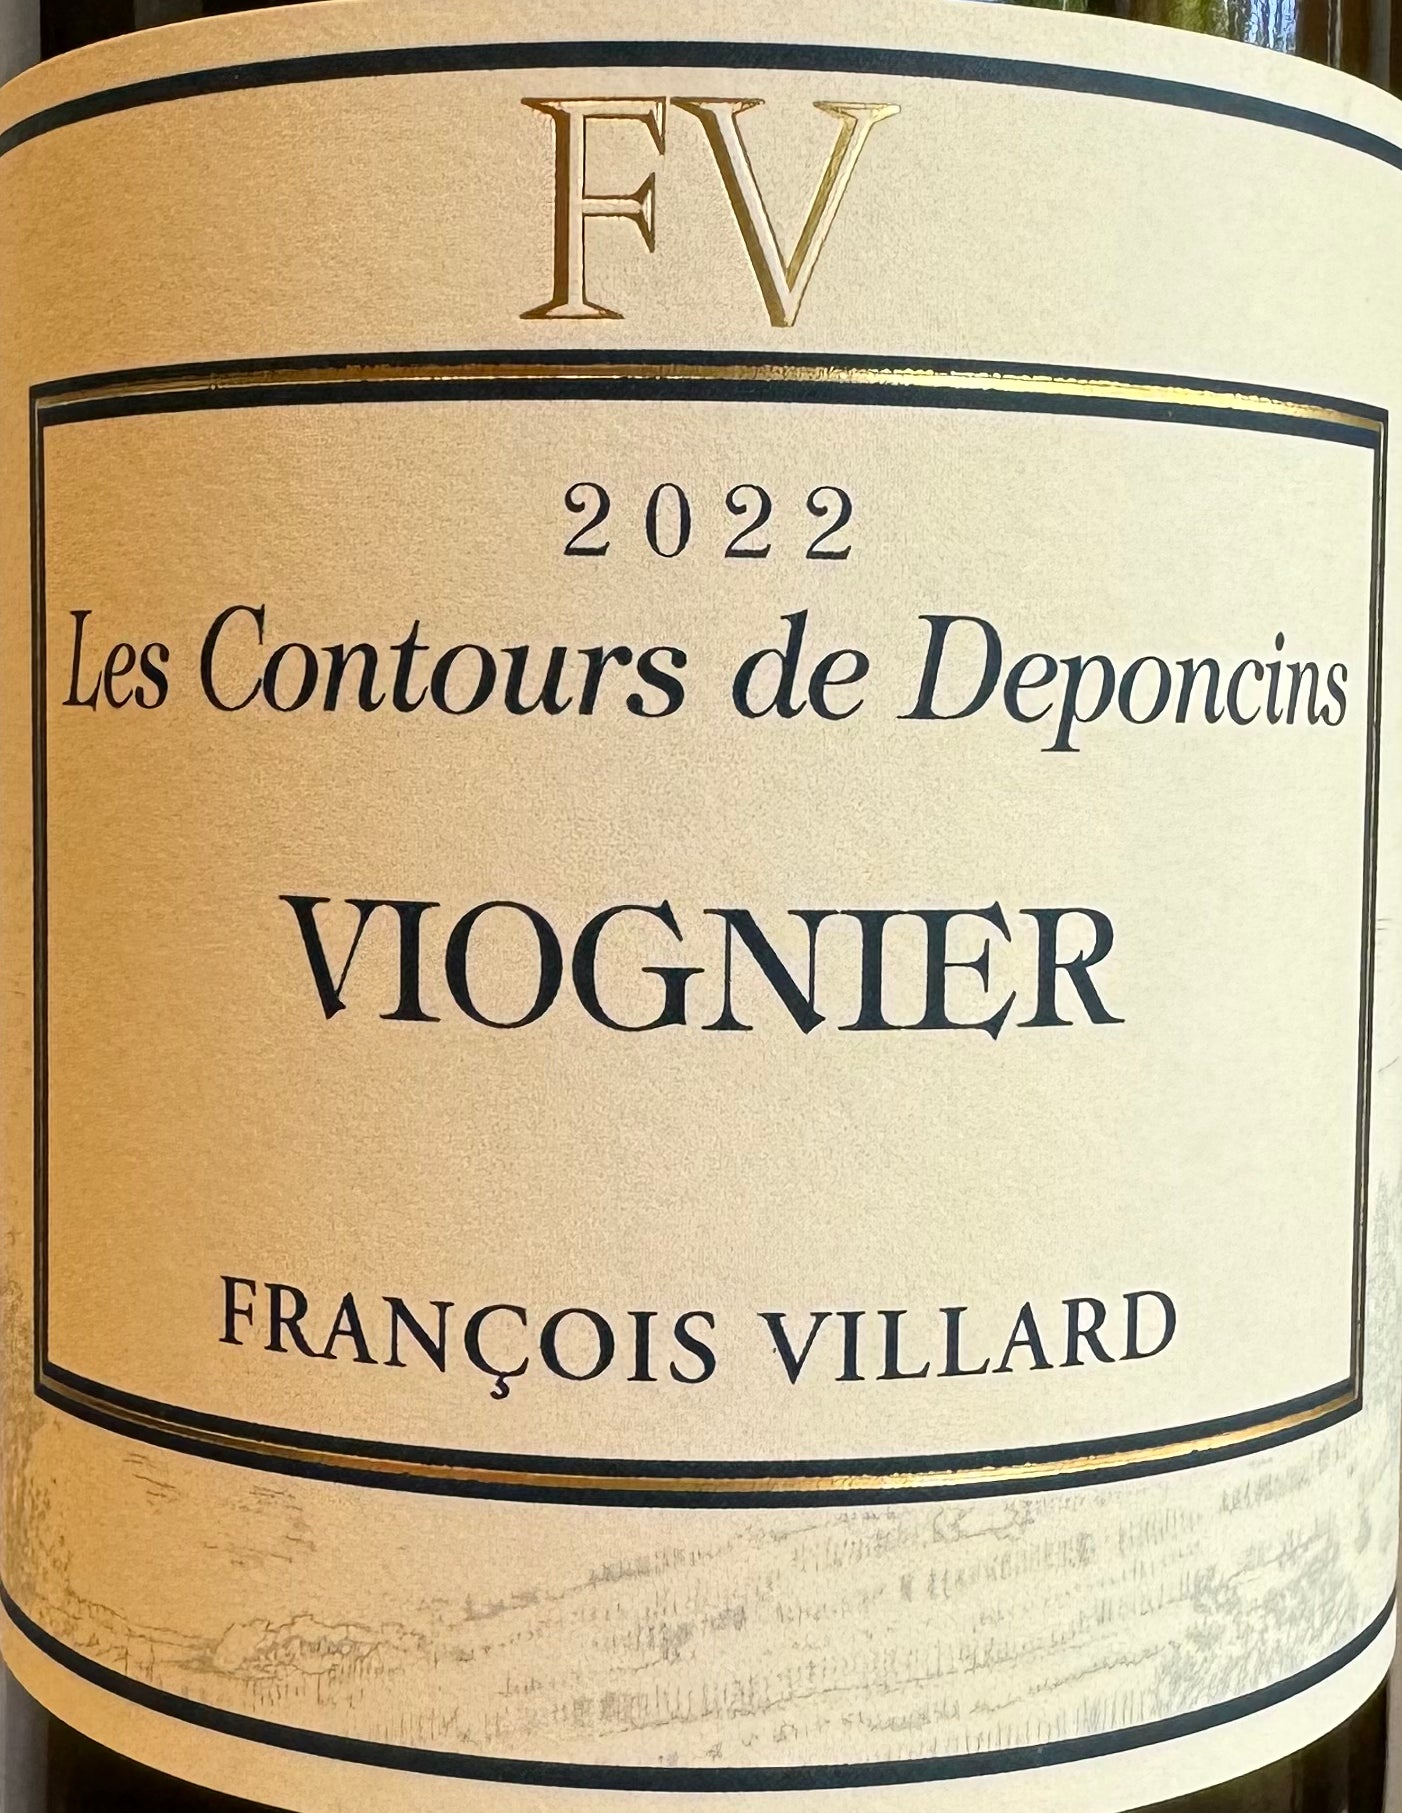 Francois Villard 'Contours de Deponcins' - Viognier